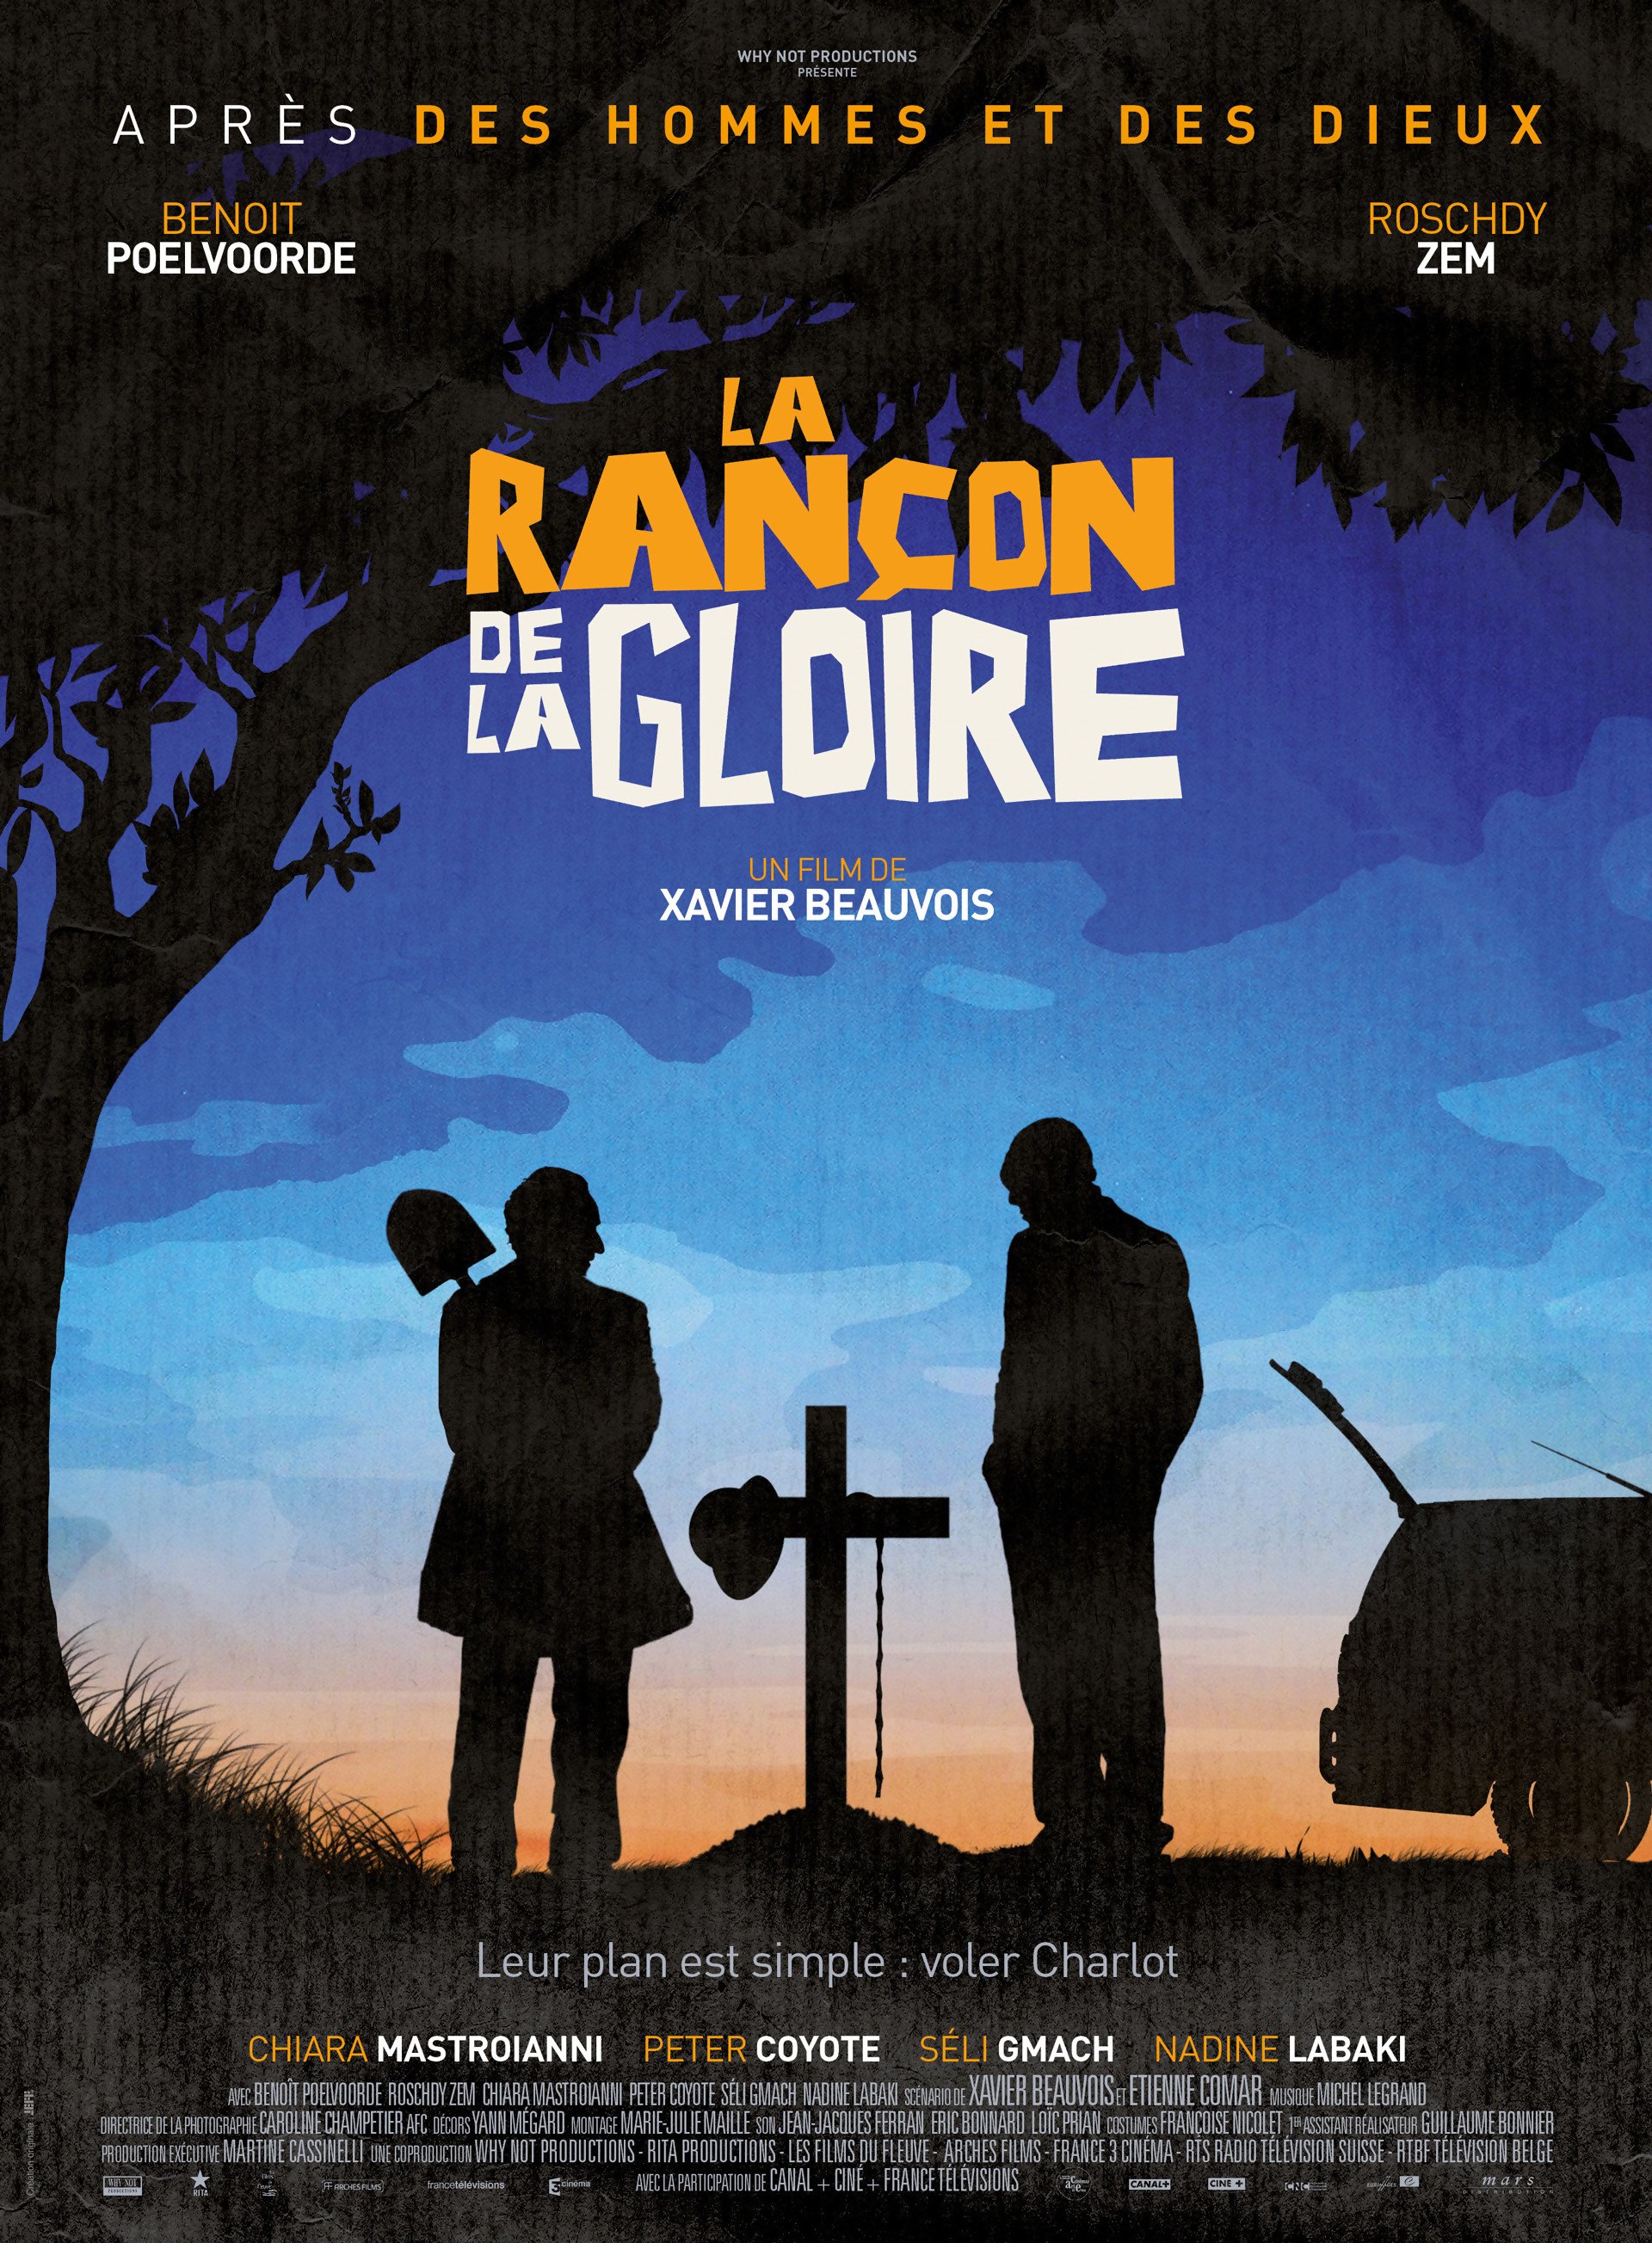 Poster of the movie La Rançon de la gloire